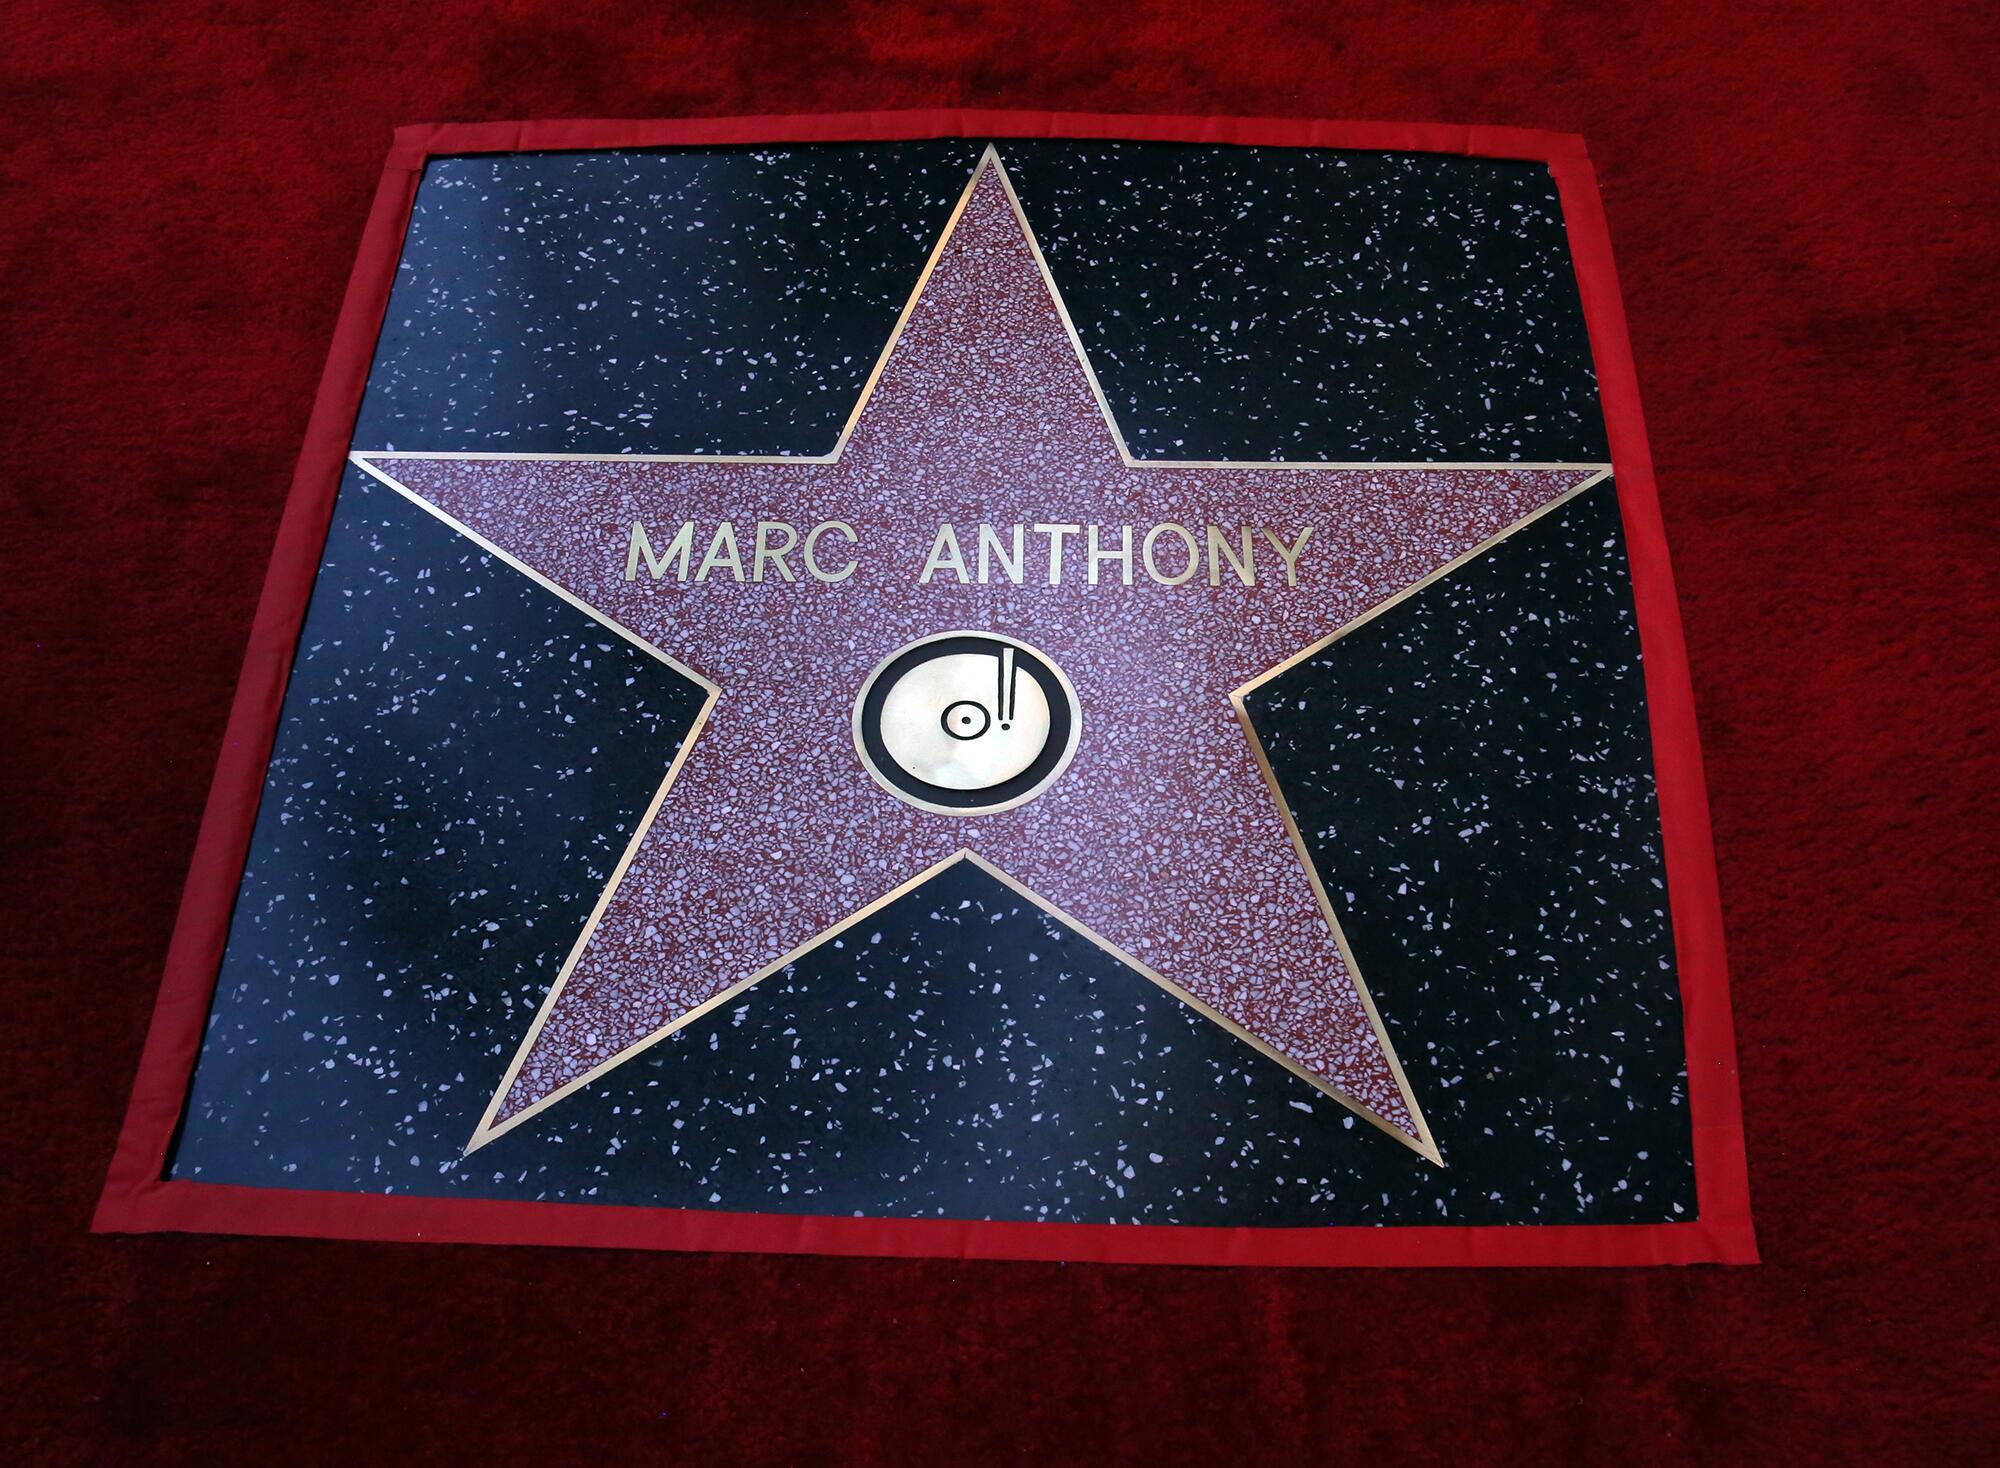 La estrella de Marc Anthony fue develada a unos metros de las estrellas de Shakira, Tommy Mottolla y 50 Cents.